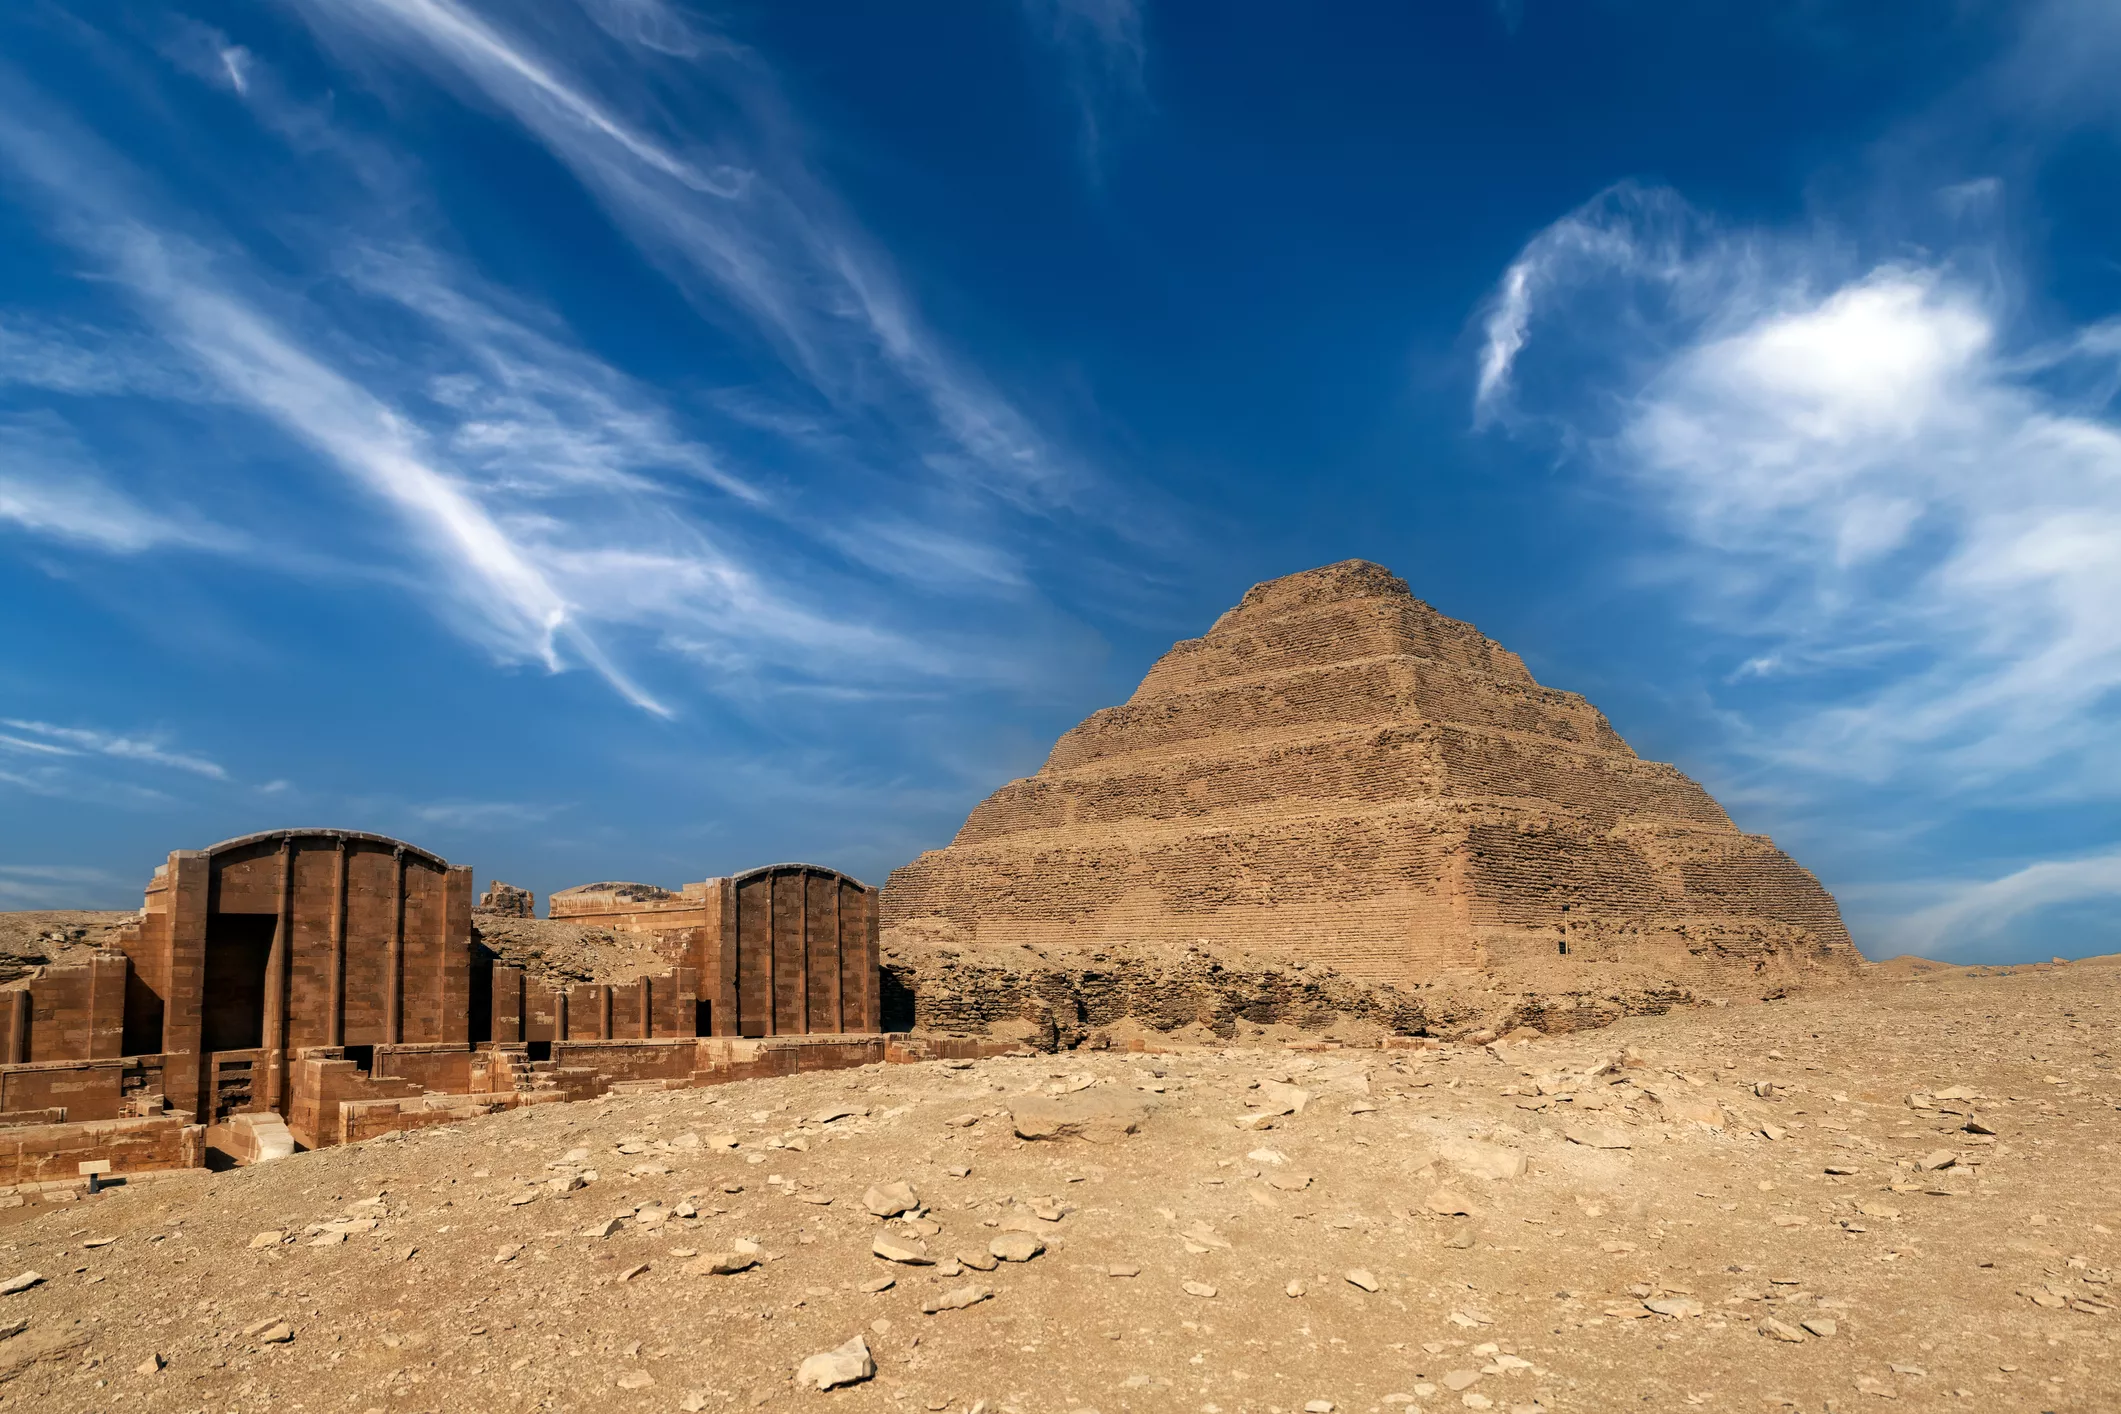 La piràmide escalonada de Djoser, a Saqqarà, és considerada la iniciadora de l’arquitectura funerària piramidal i la predecessora de les grans piràmides de Gizeh